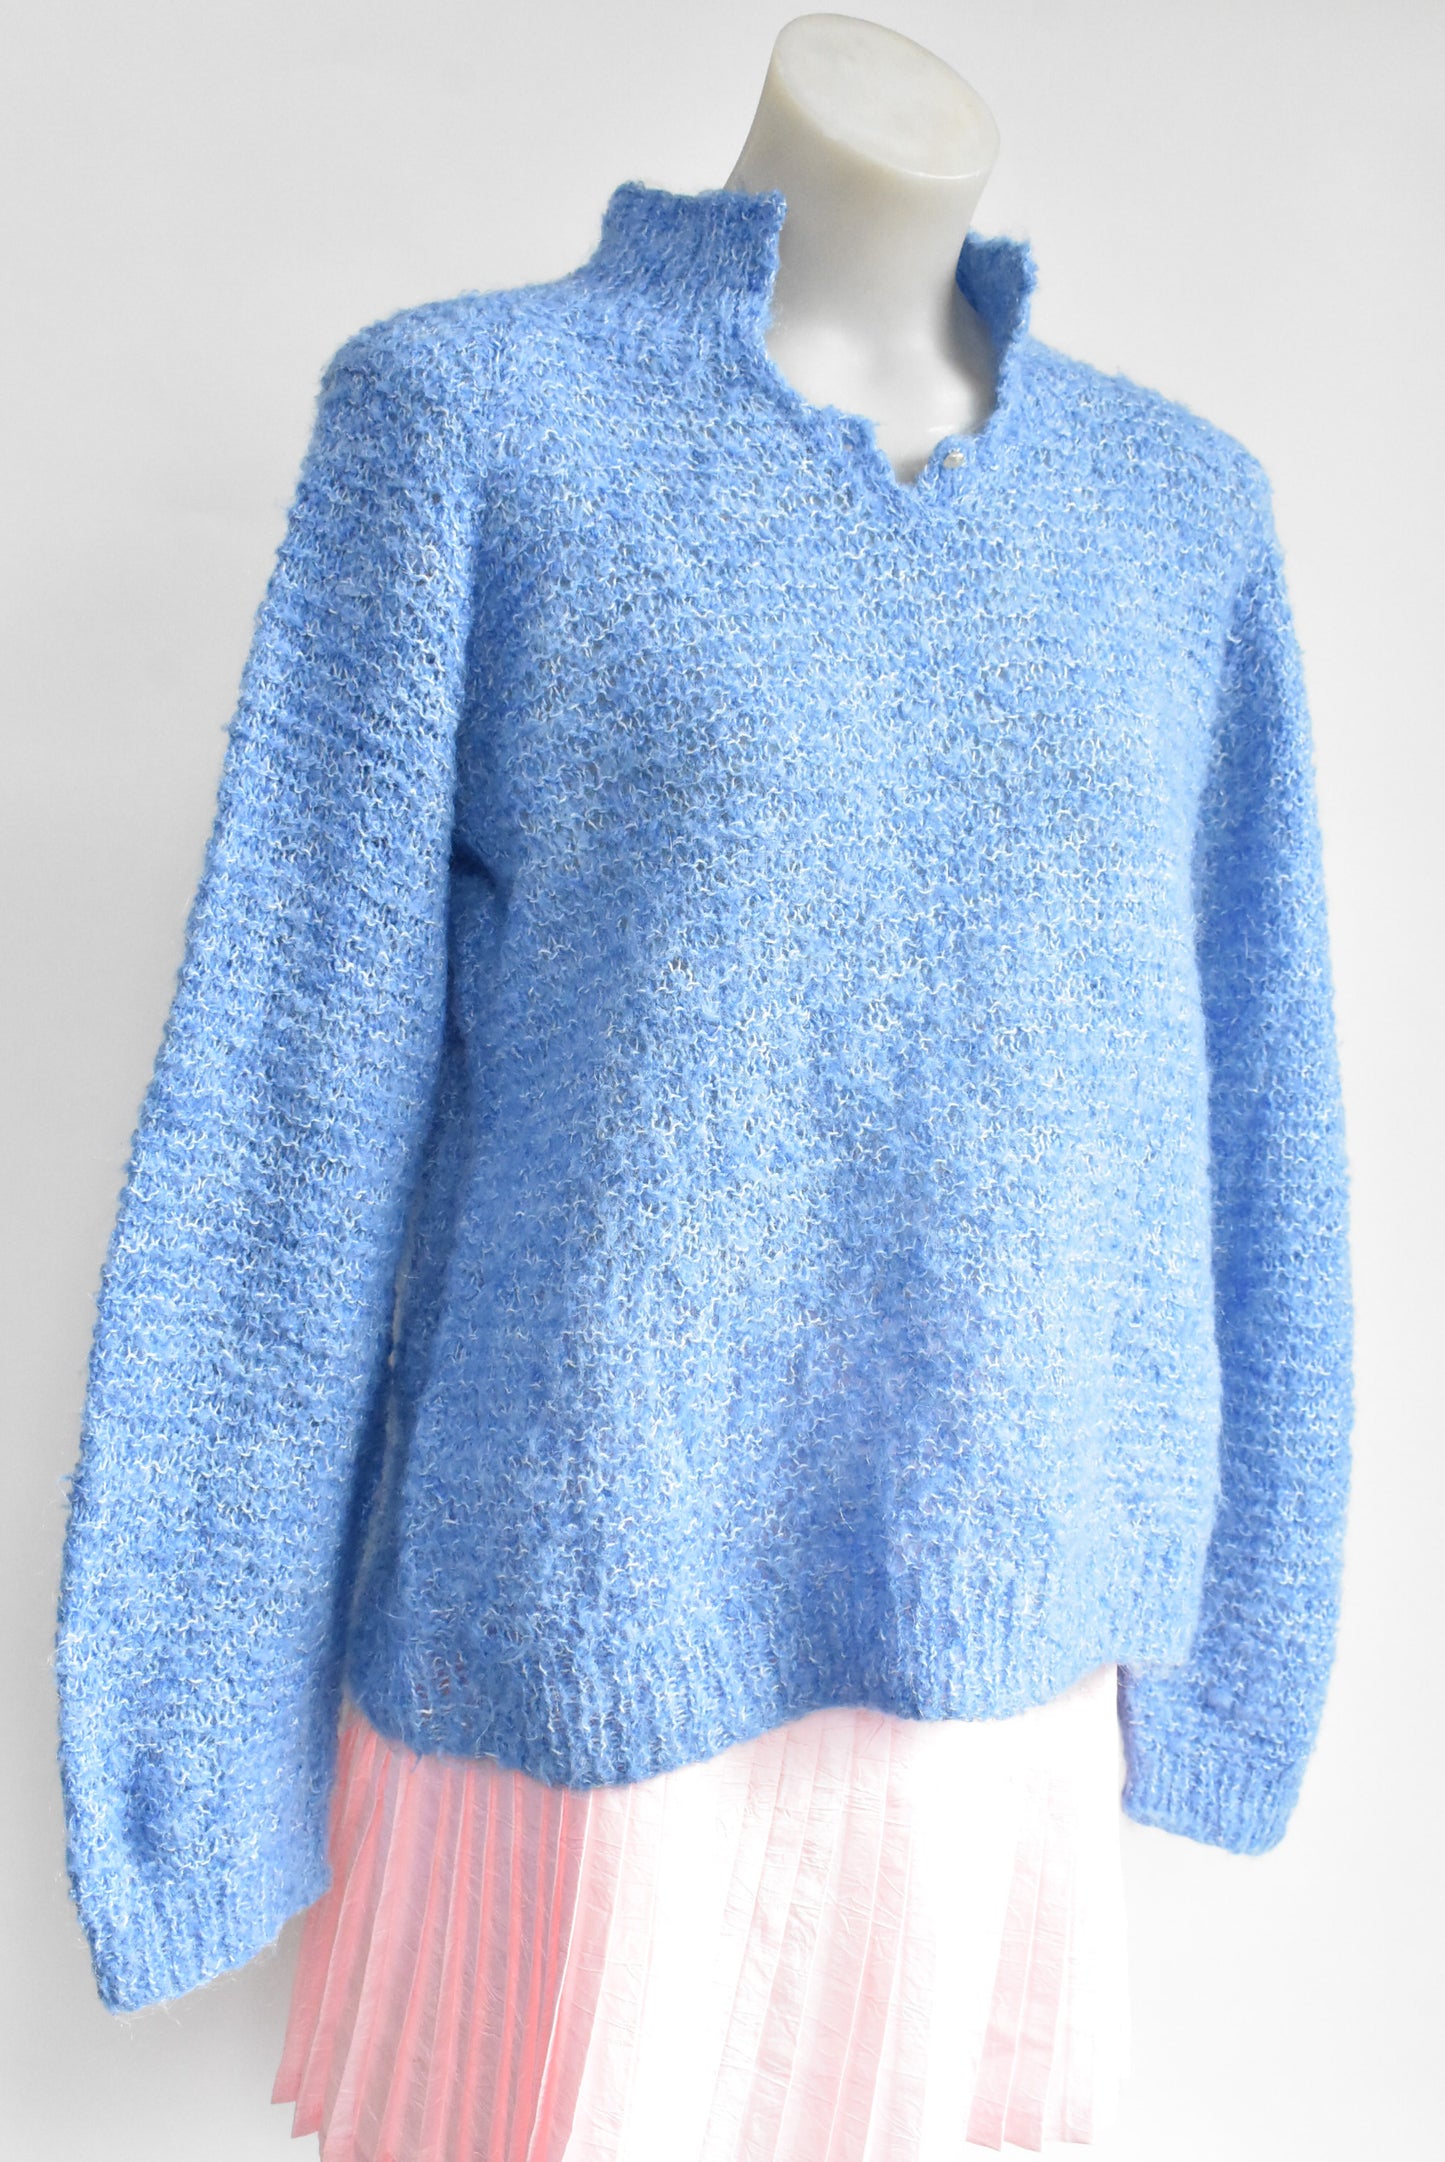 Handknit blue wool jumper, M